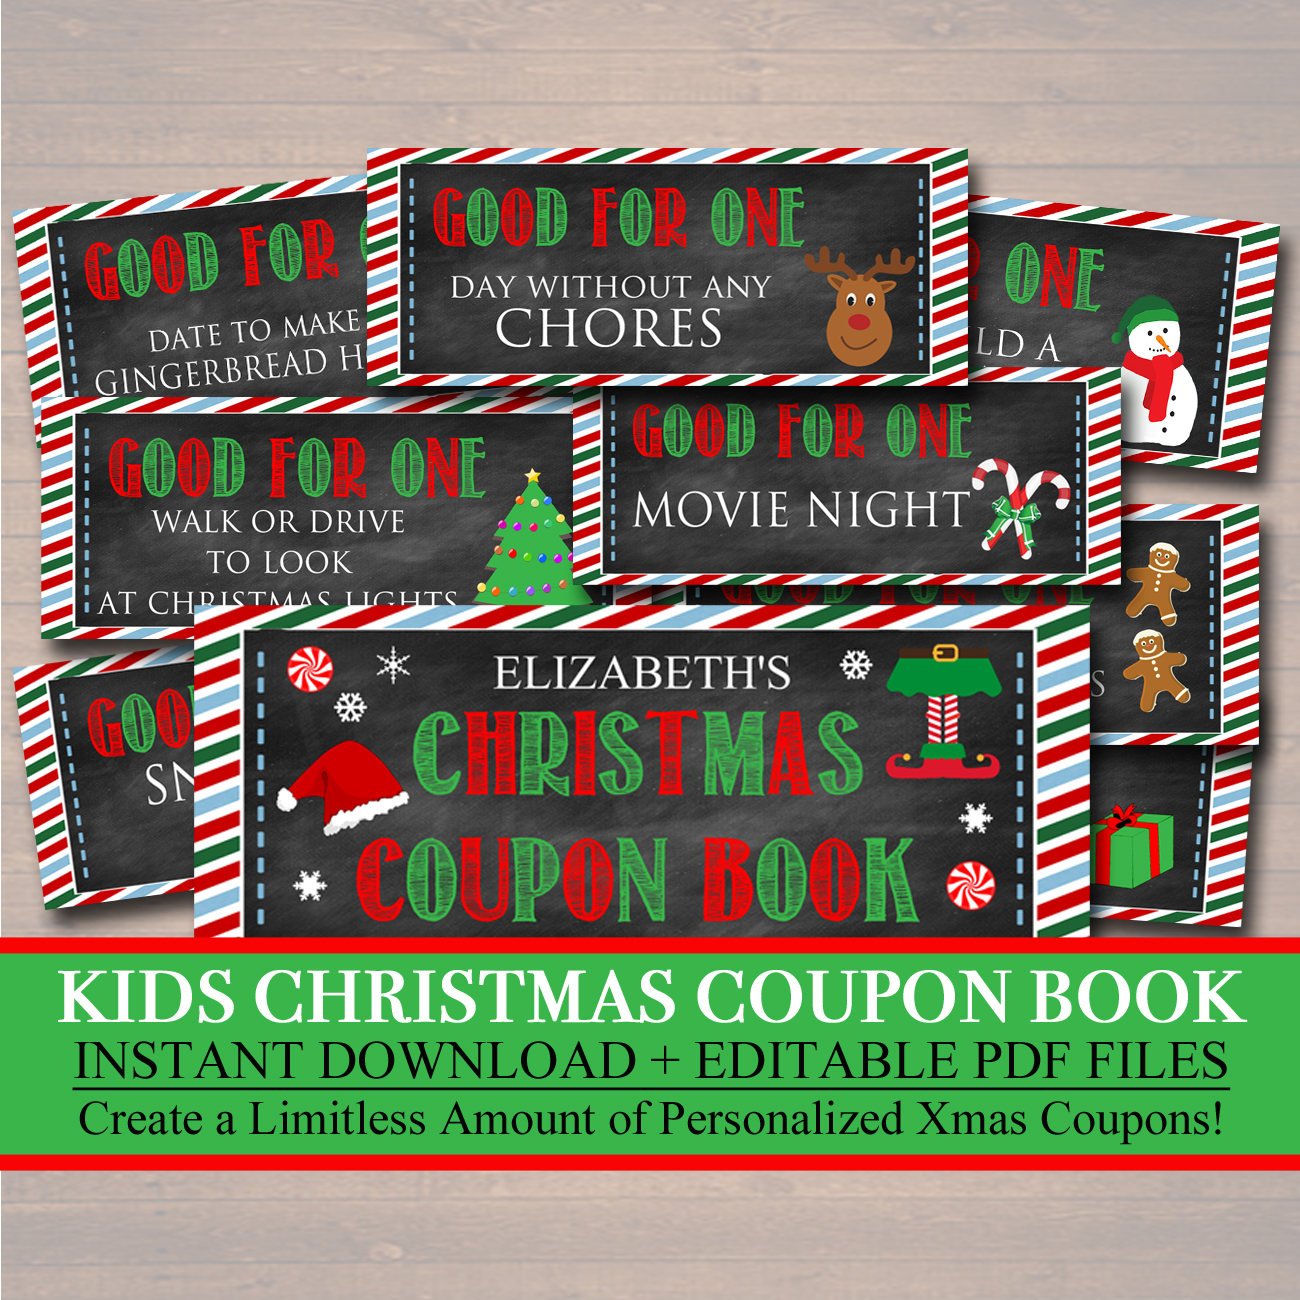 kid-s-christmas-coupon-book-printable-holiday-coupons-stocking